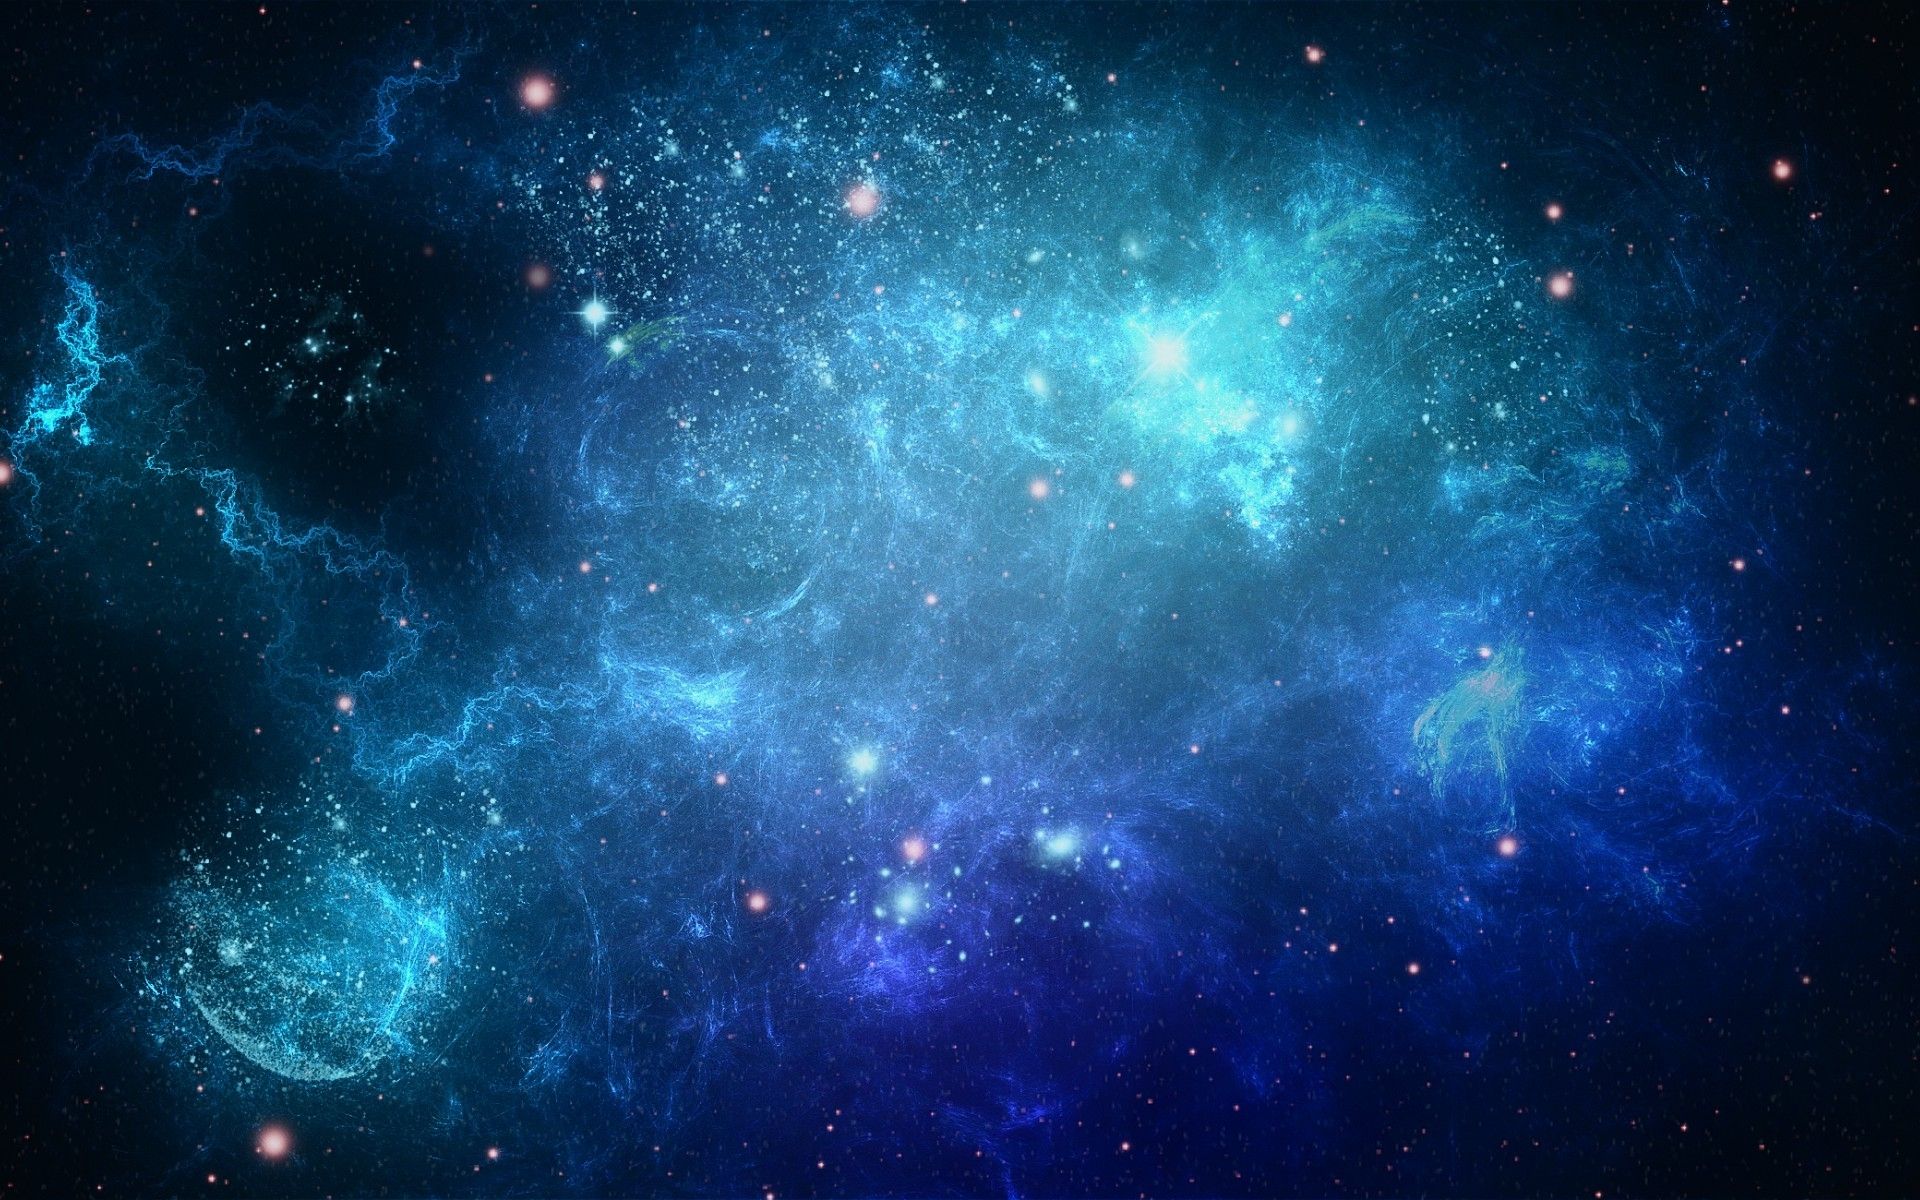 nuova carta da parati della galassia,spazio,cielo,galassia,blu,atmosfera